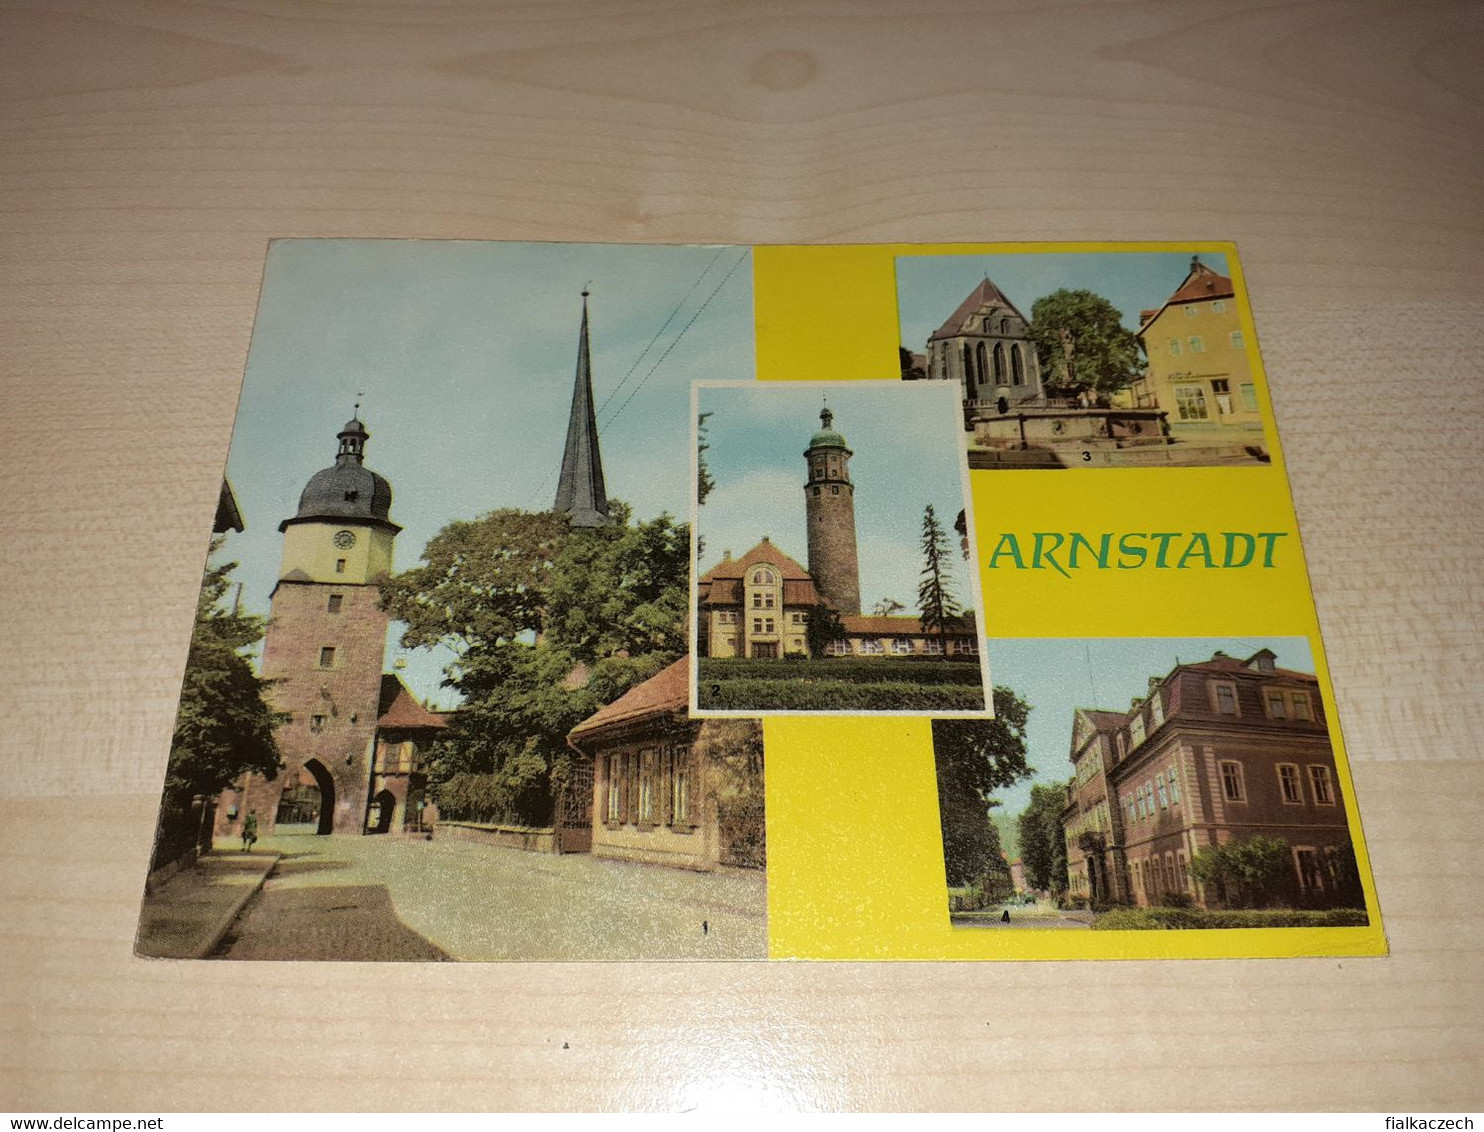 Arnstadt, Germany, Thuringia - Arnstadt